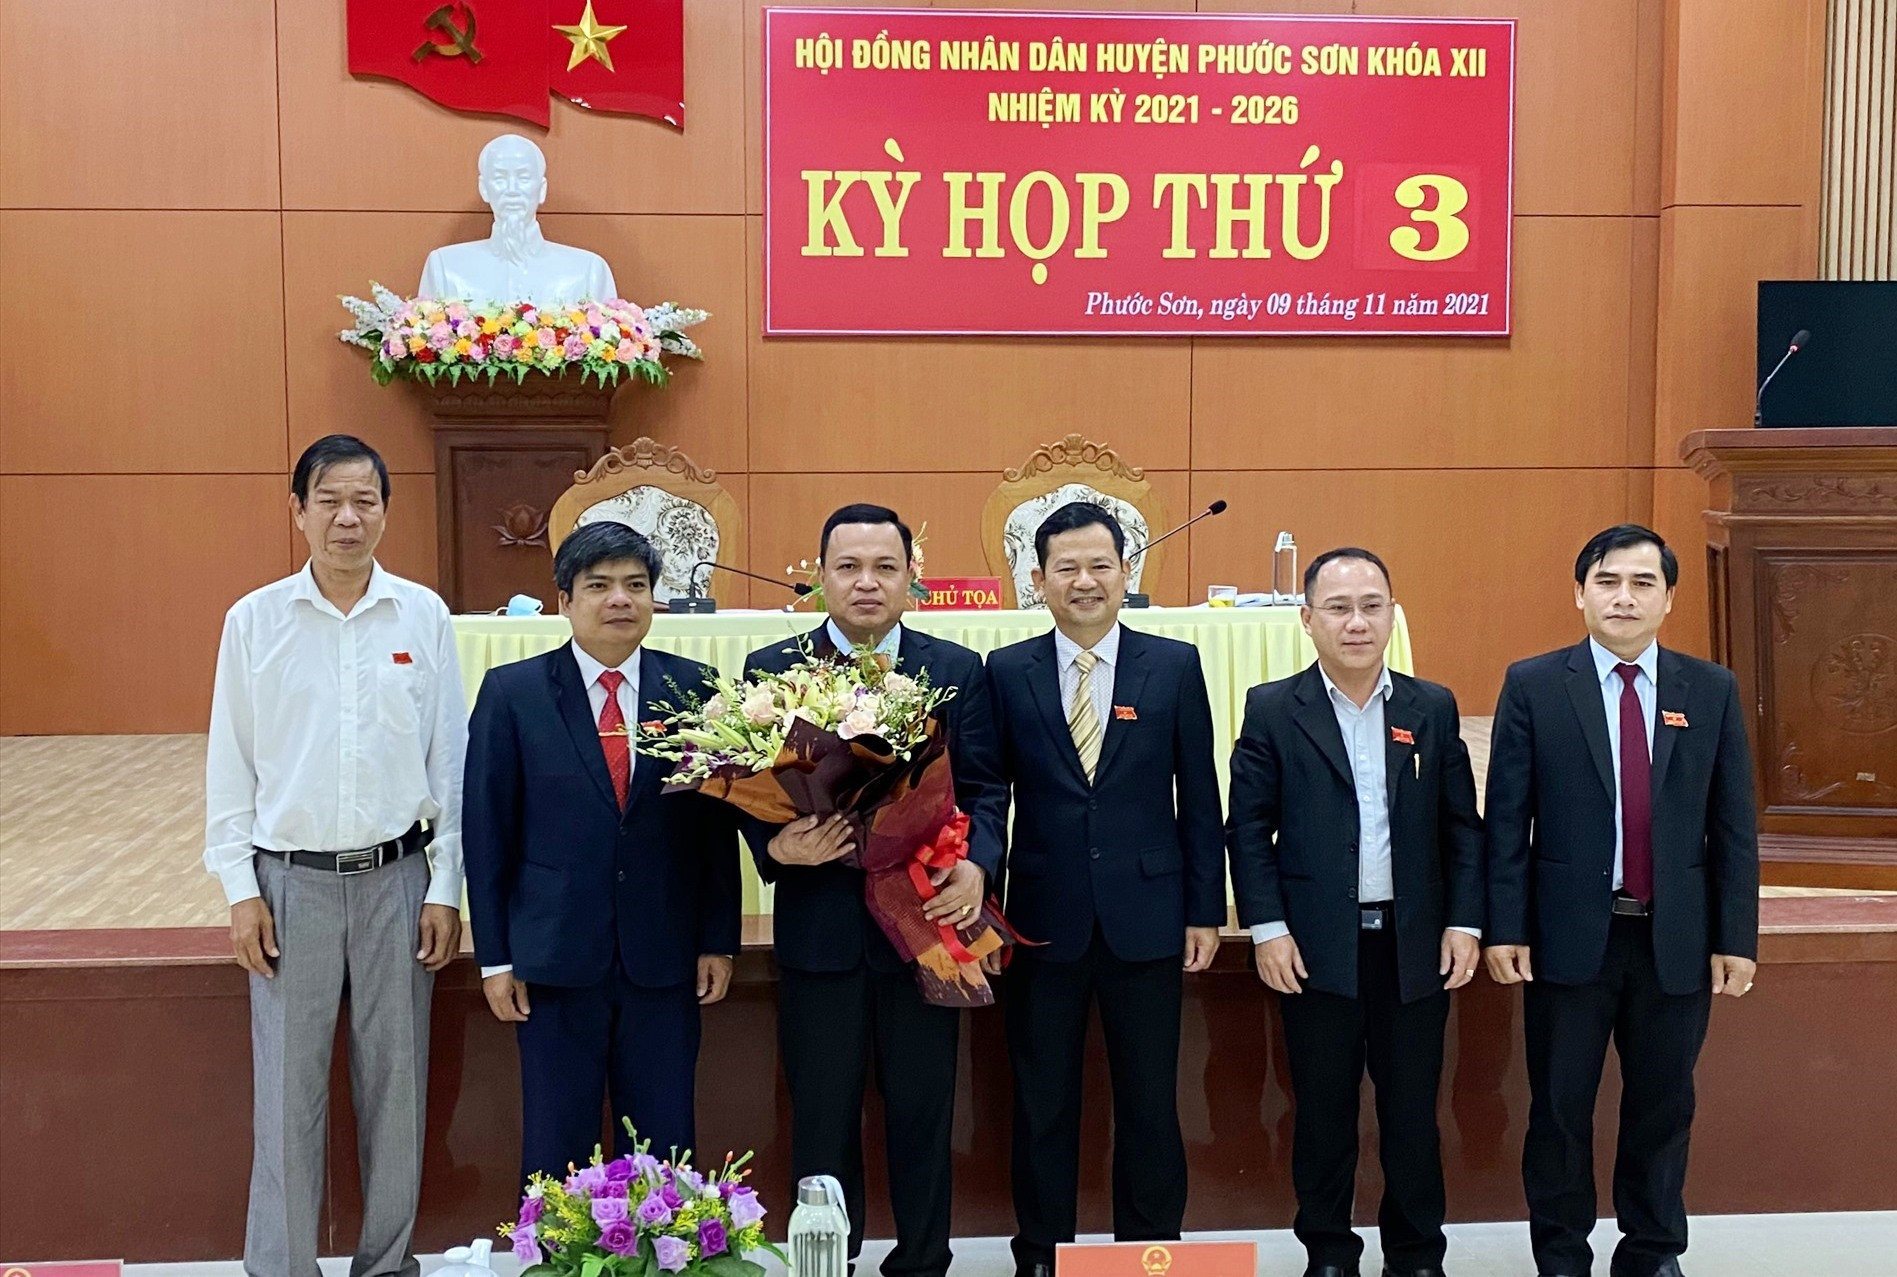 Lãnh đạo huyện Phước Sơn tặng hoa, chúc mừng Ông Đỗ Hoài Xoan được bầu giữ chức Phó chủ tịch UNBD huyện, nhiệm kỳ 2021-2026